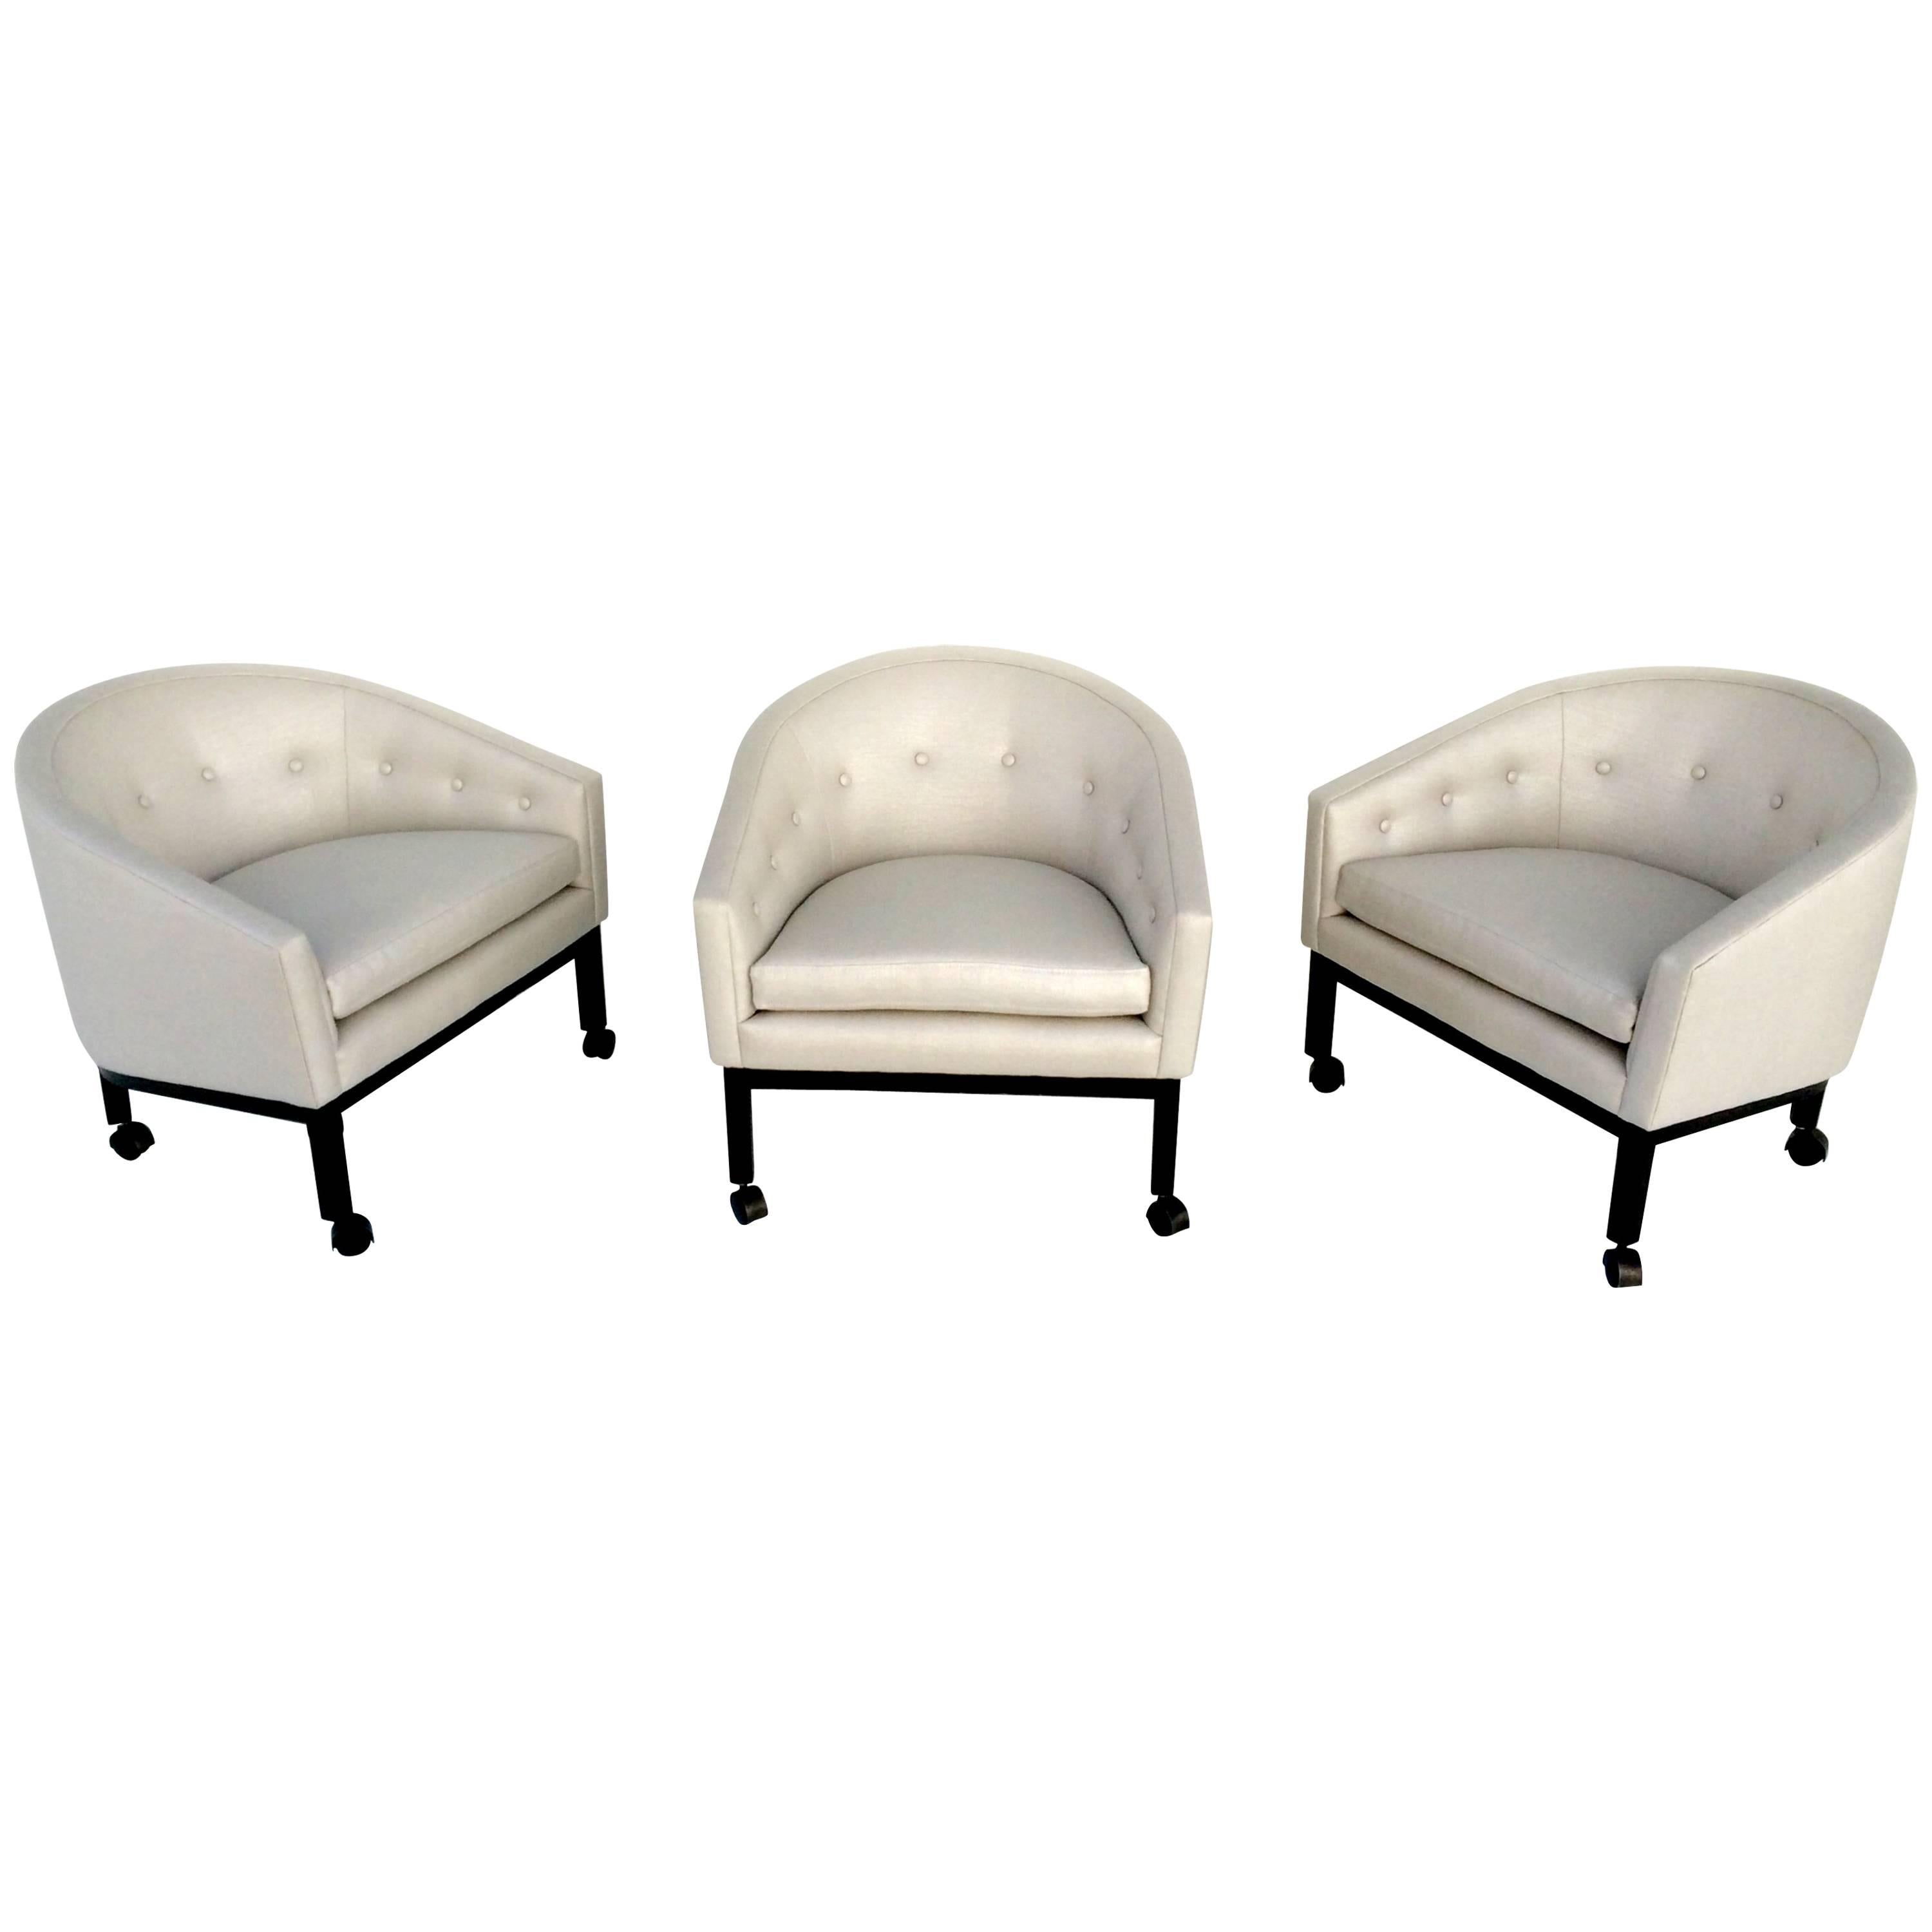 Set of Three Club Chairs